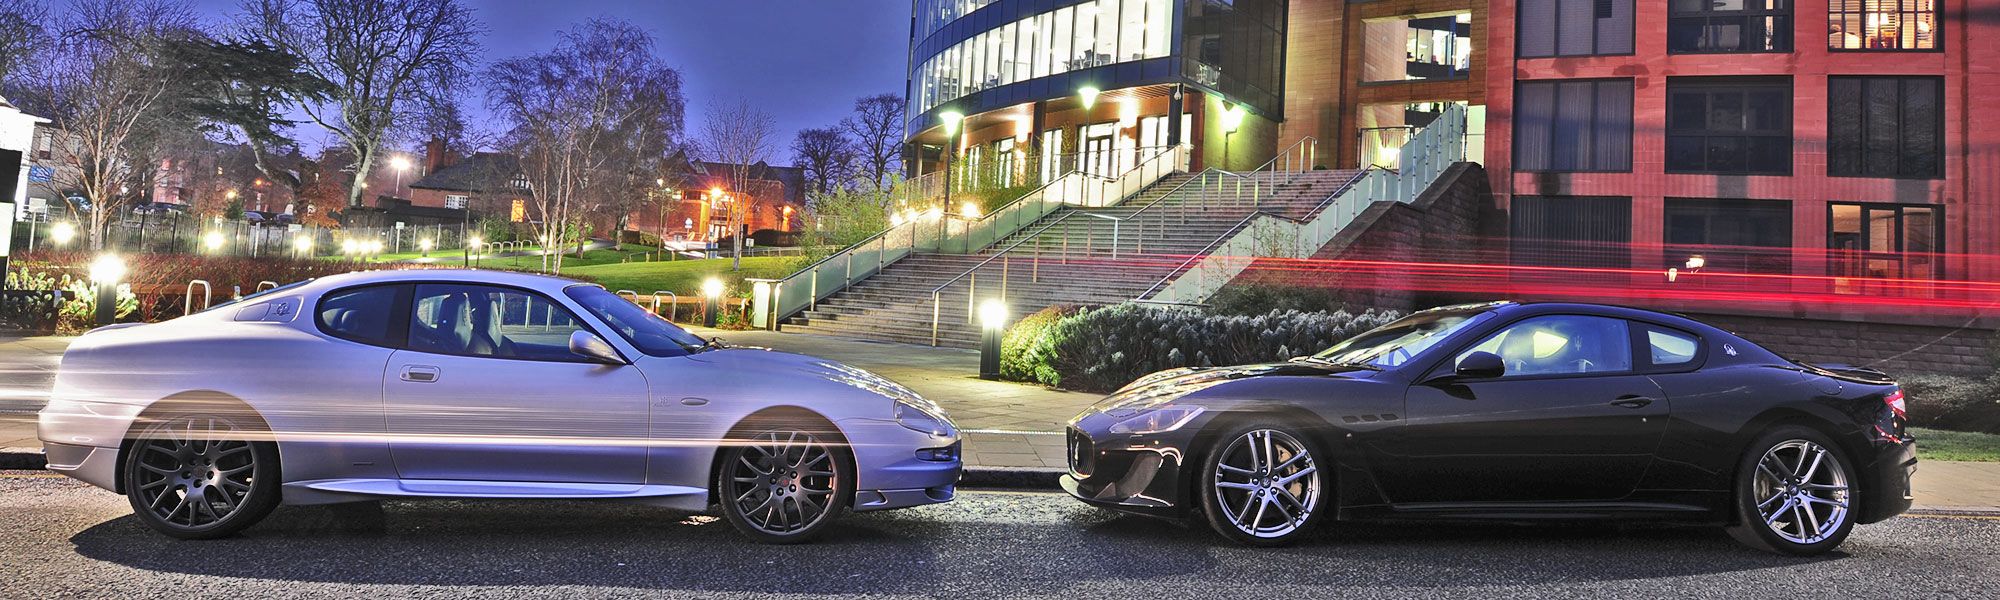 Maserati cars in Chester